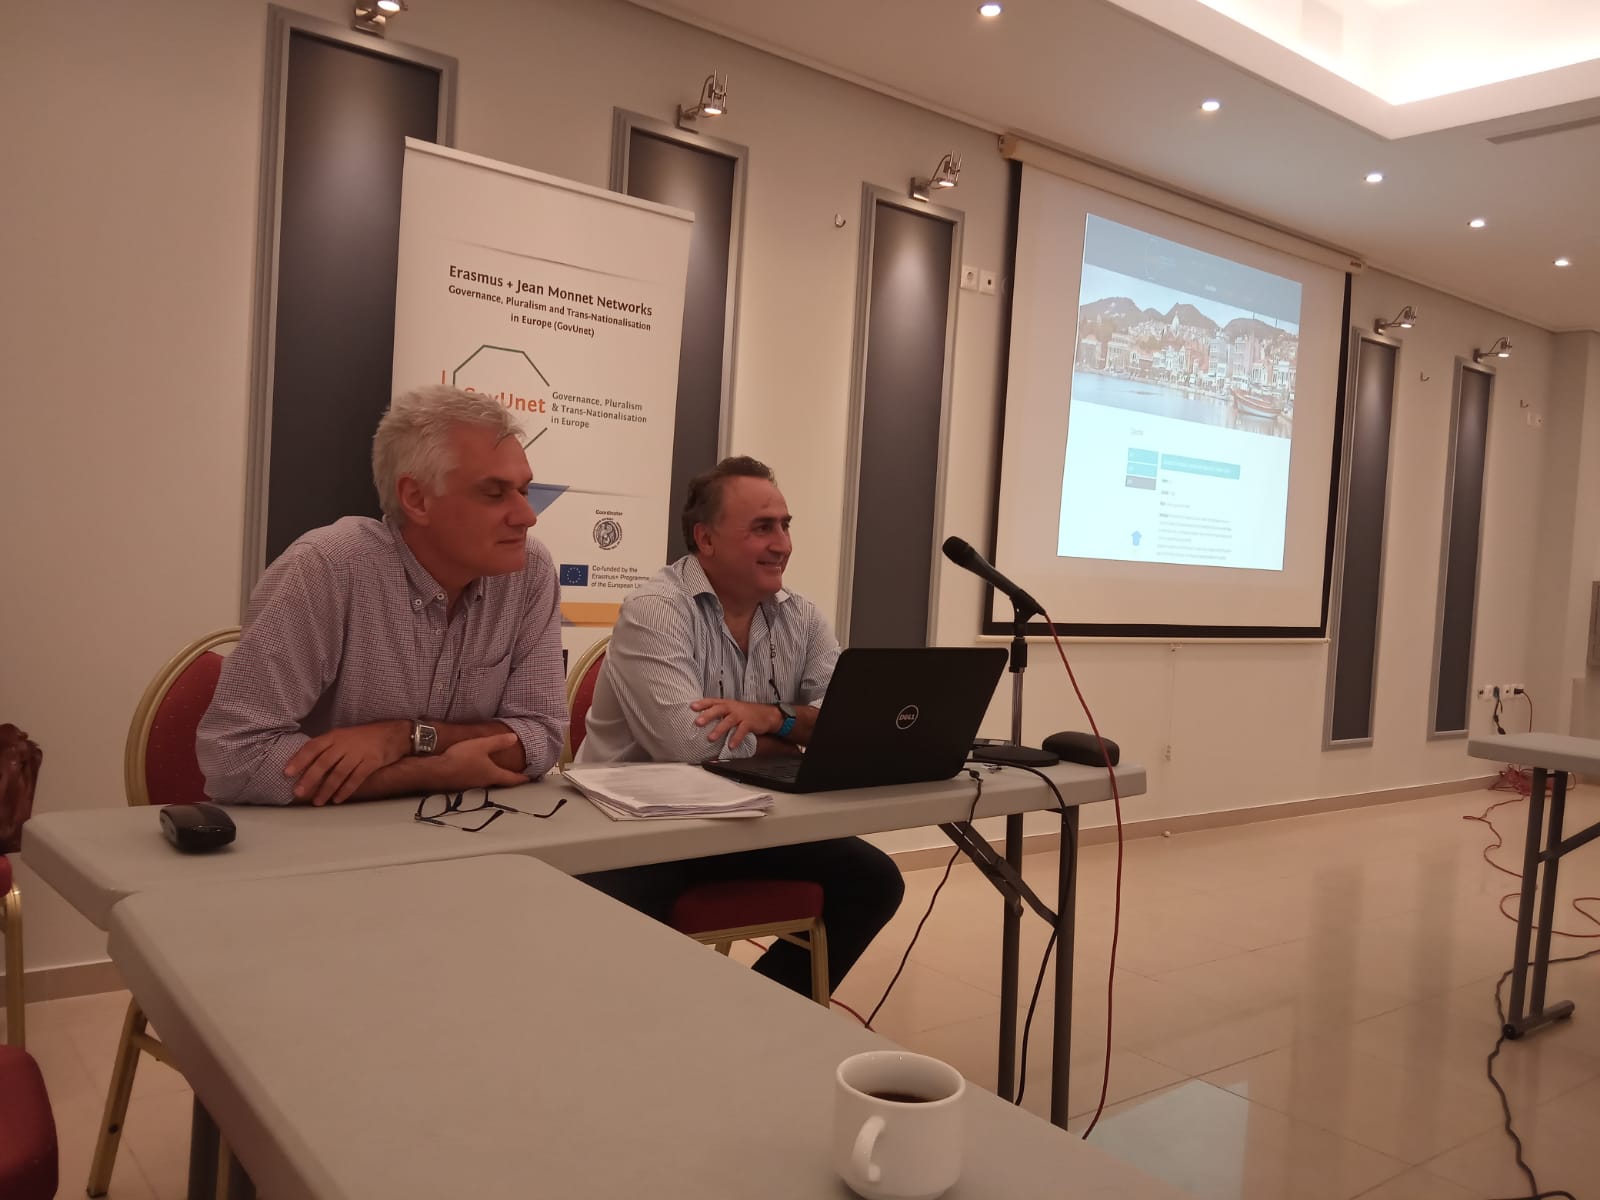 Seminario del Dr. Alejandro del Valle en el Curso “European Governance, Μigration and Citizenship” organizado por la Red GovUnet en la Universidad del Egeo (Mitilene, Lesbos – Grecia), 15 julio 2019